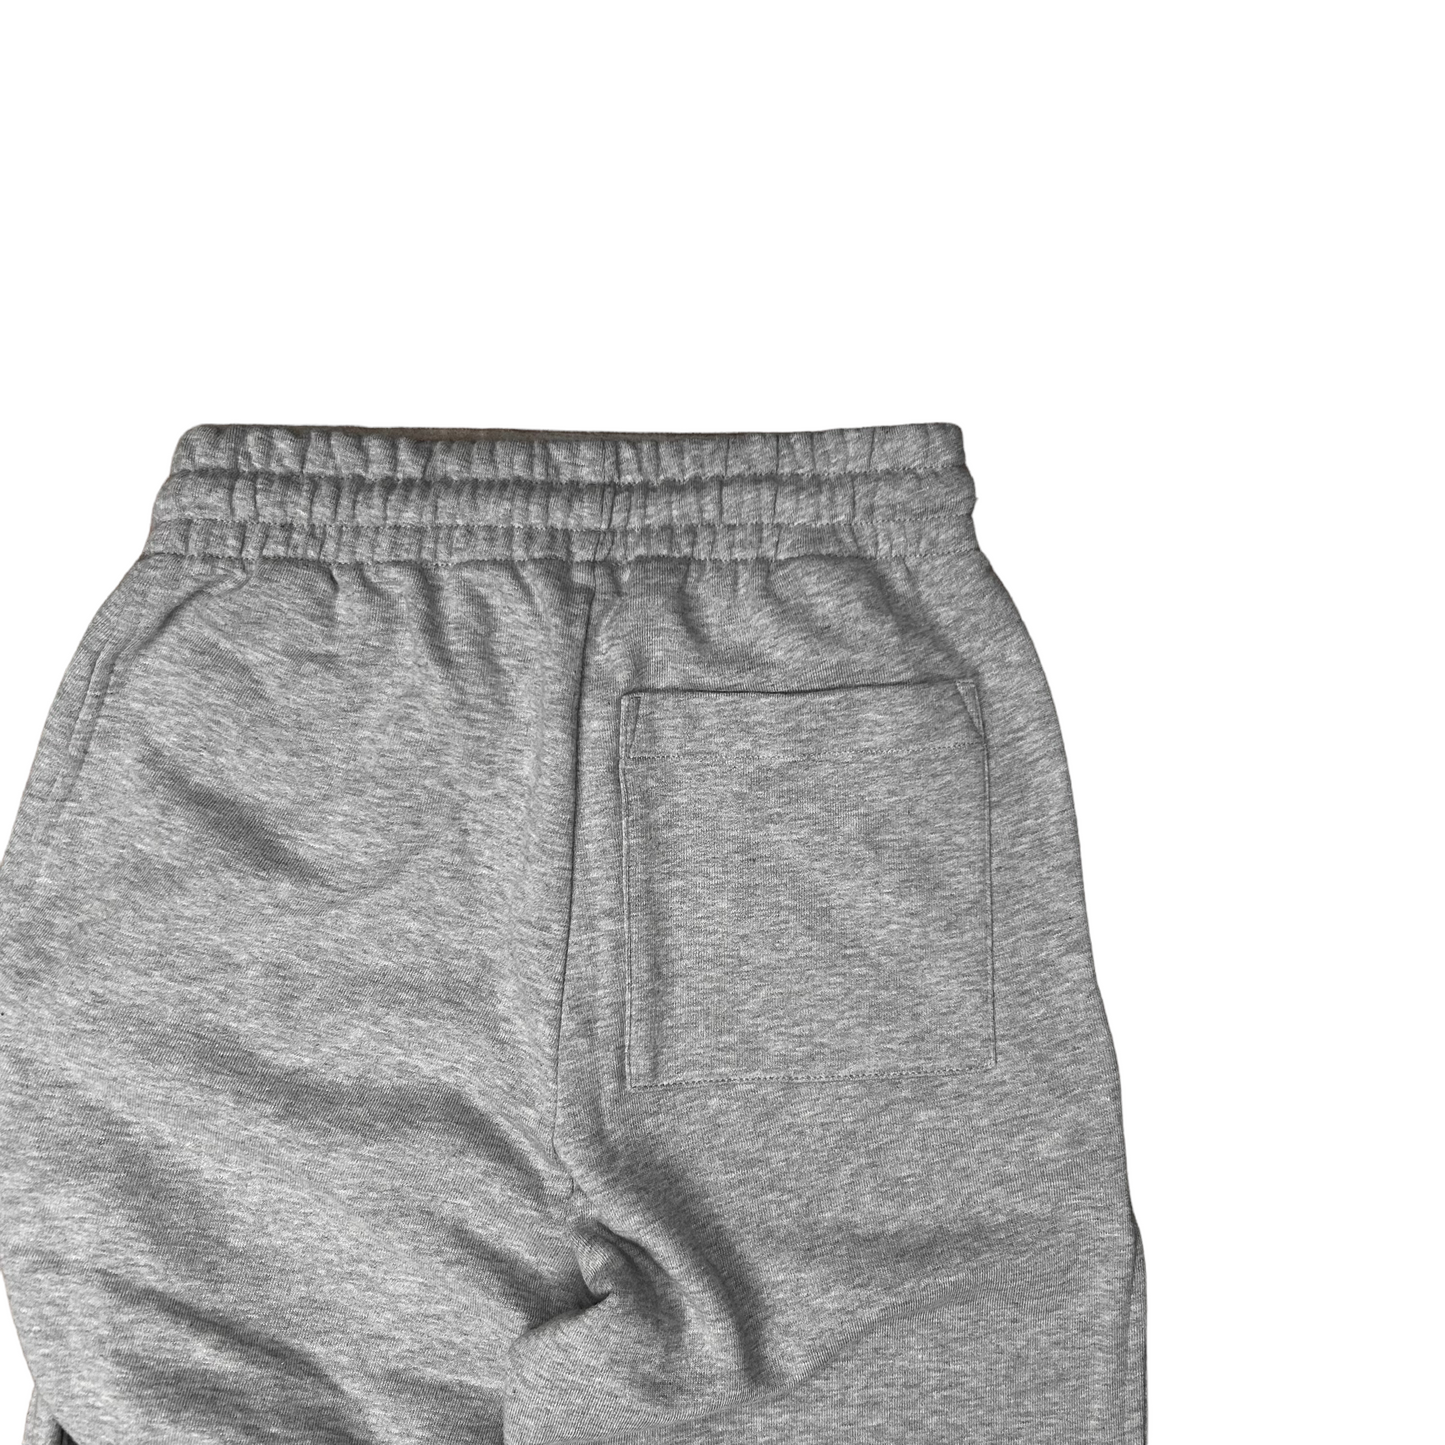 Dries Van Noten Distorted Sweat Pants Grey